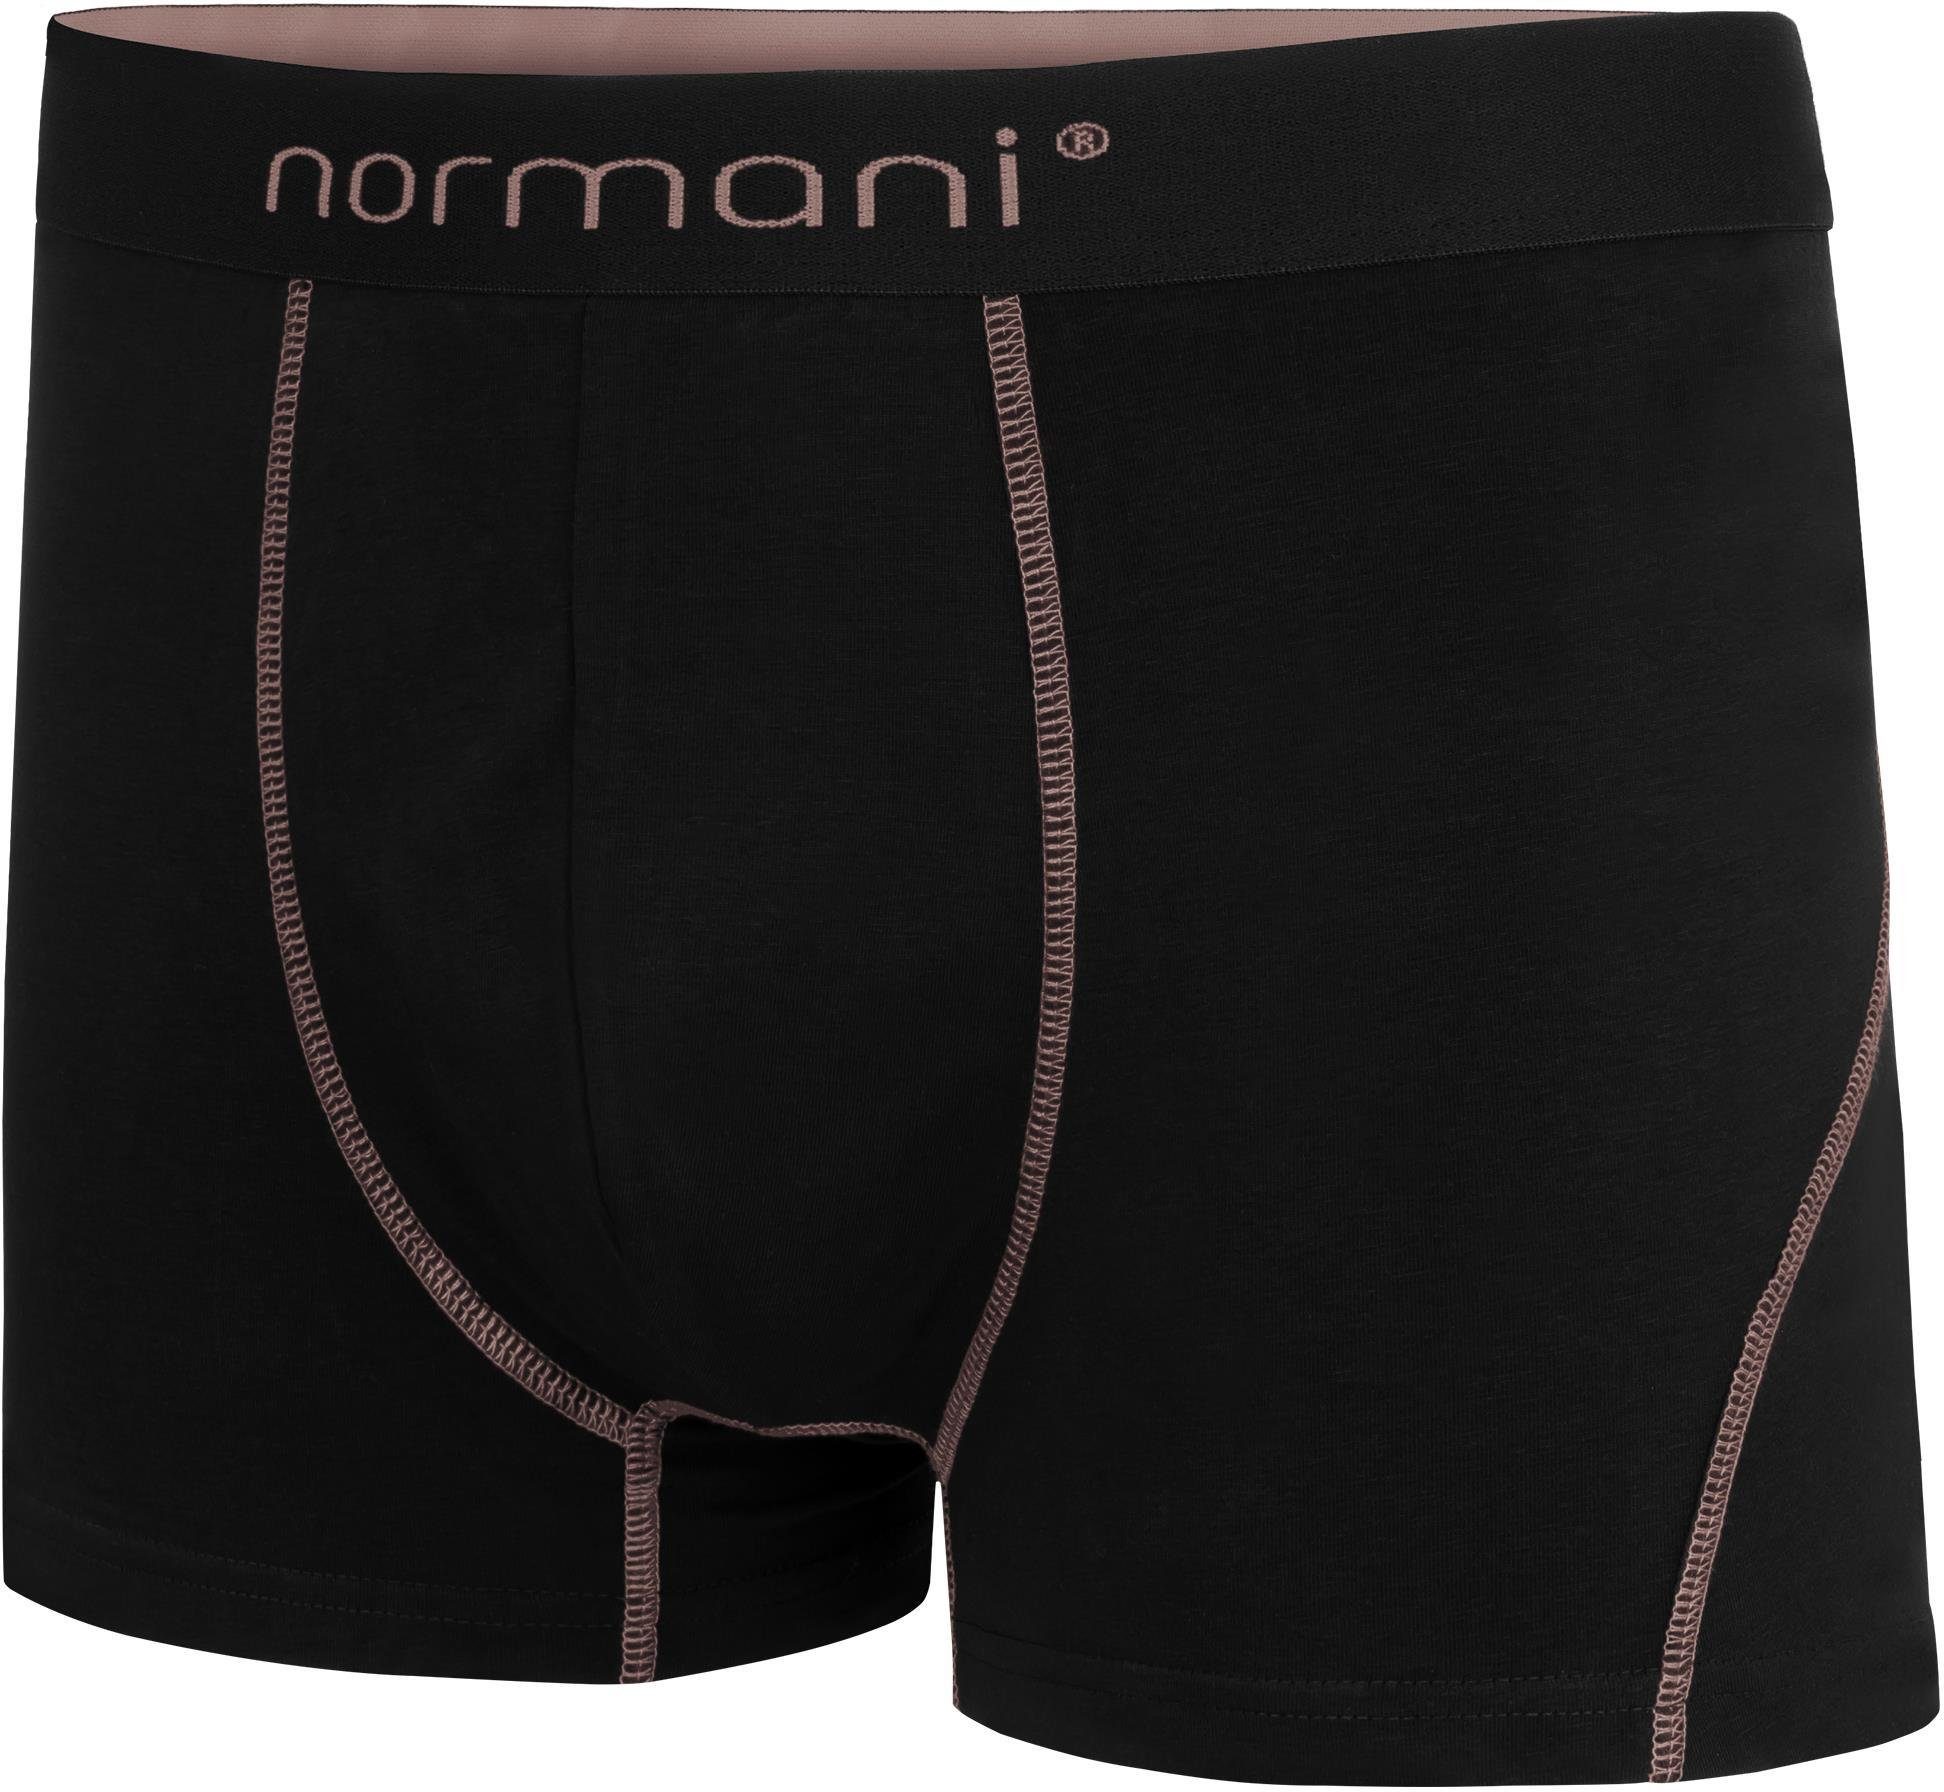 normani Boxershorts 6 Herren Baumwoll-Boxershorts Baumwolle atmungsaktiver Unterhose Männer aus für Lachs